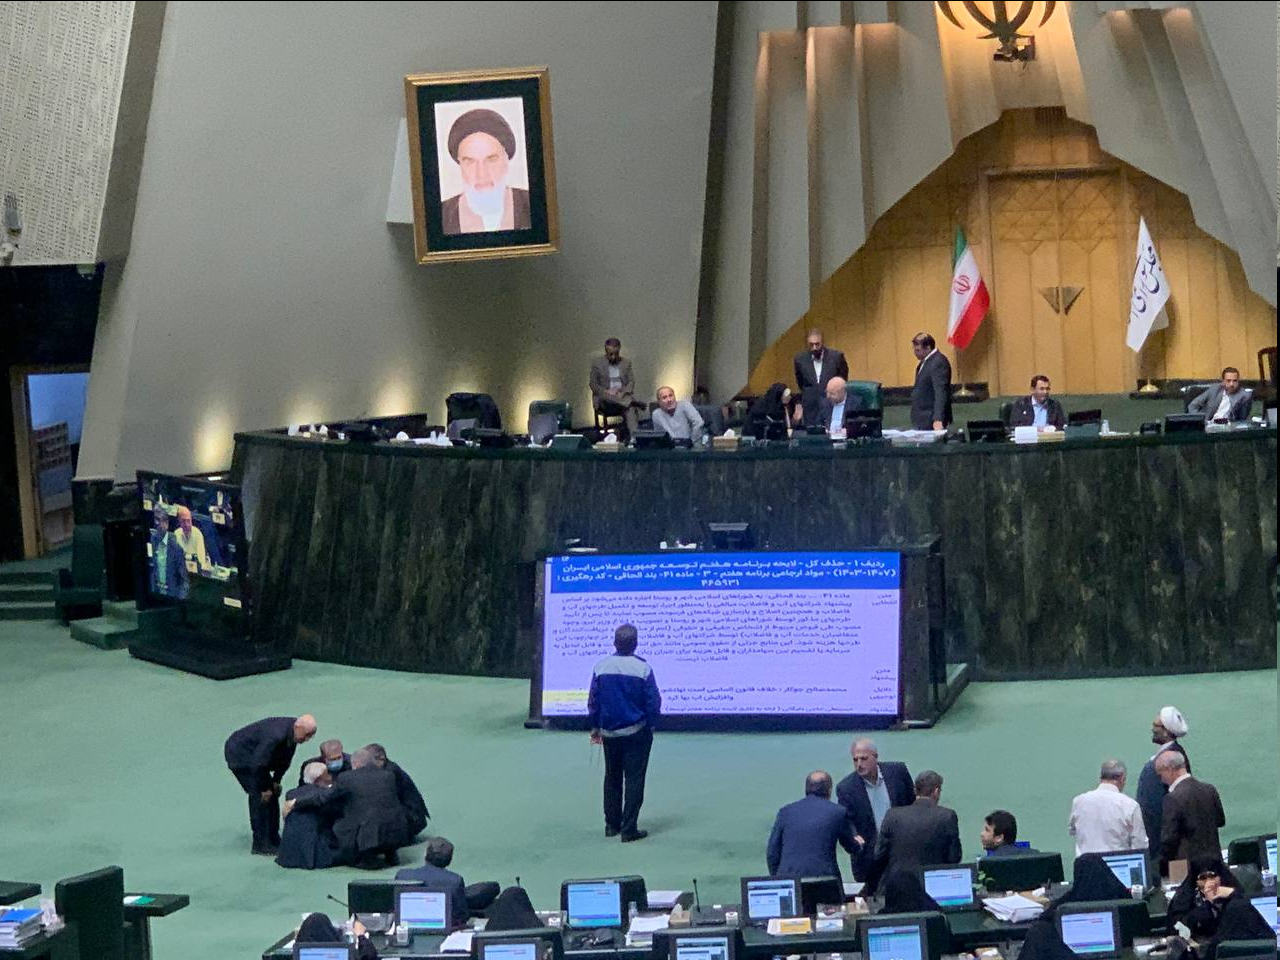 الیاس نادران در مقابل جایگاه هیات رئیسه مجلس تحصن کرد